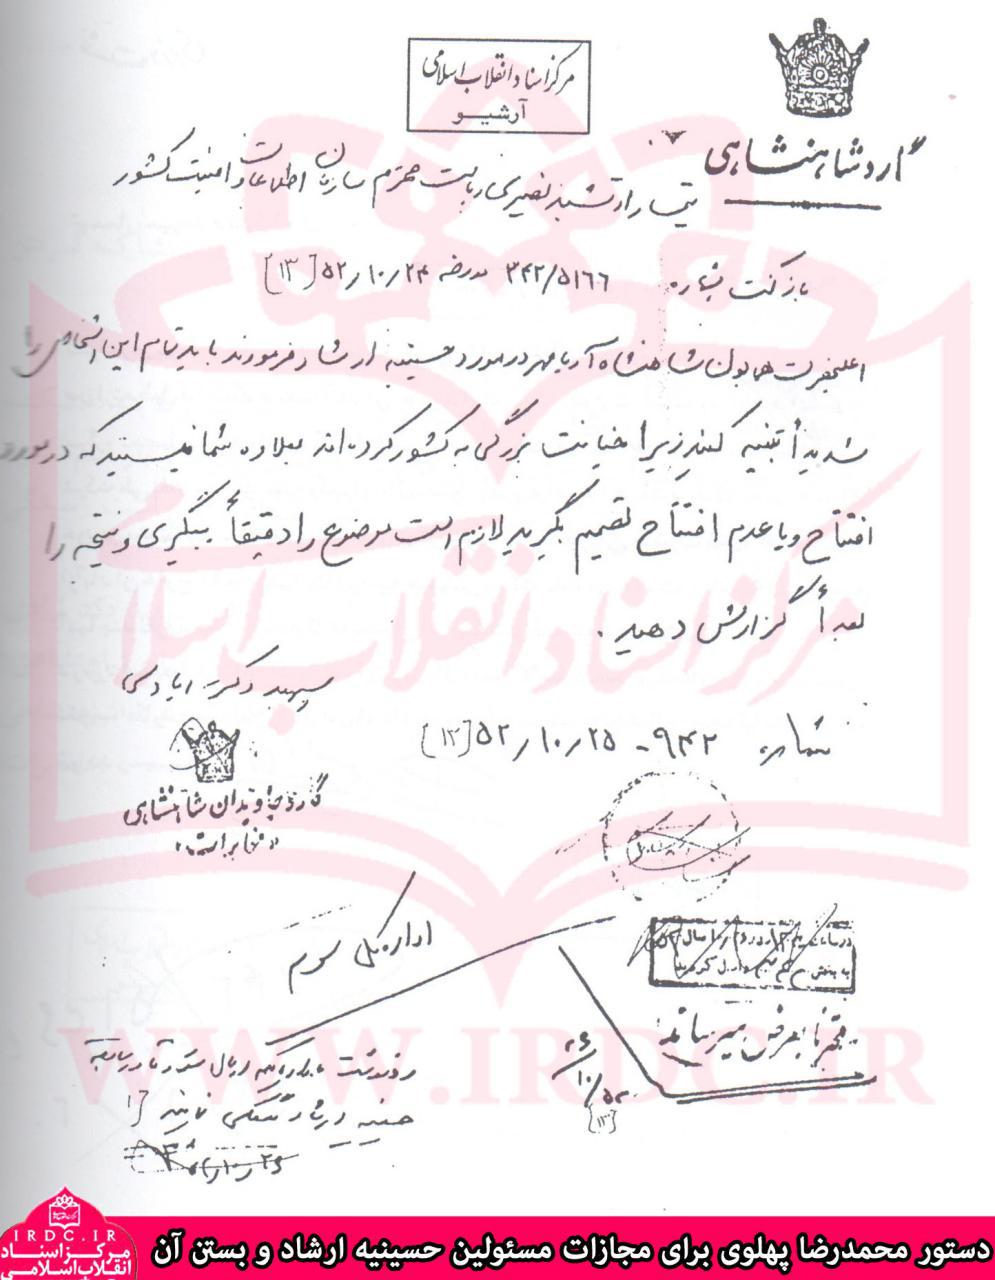 سند دستور محمدرضا پهلوی برای بستن حسینیه ارشاد و مجازات مسئولین آن در سال 1352